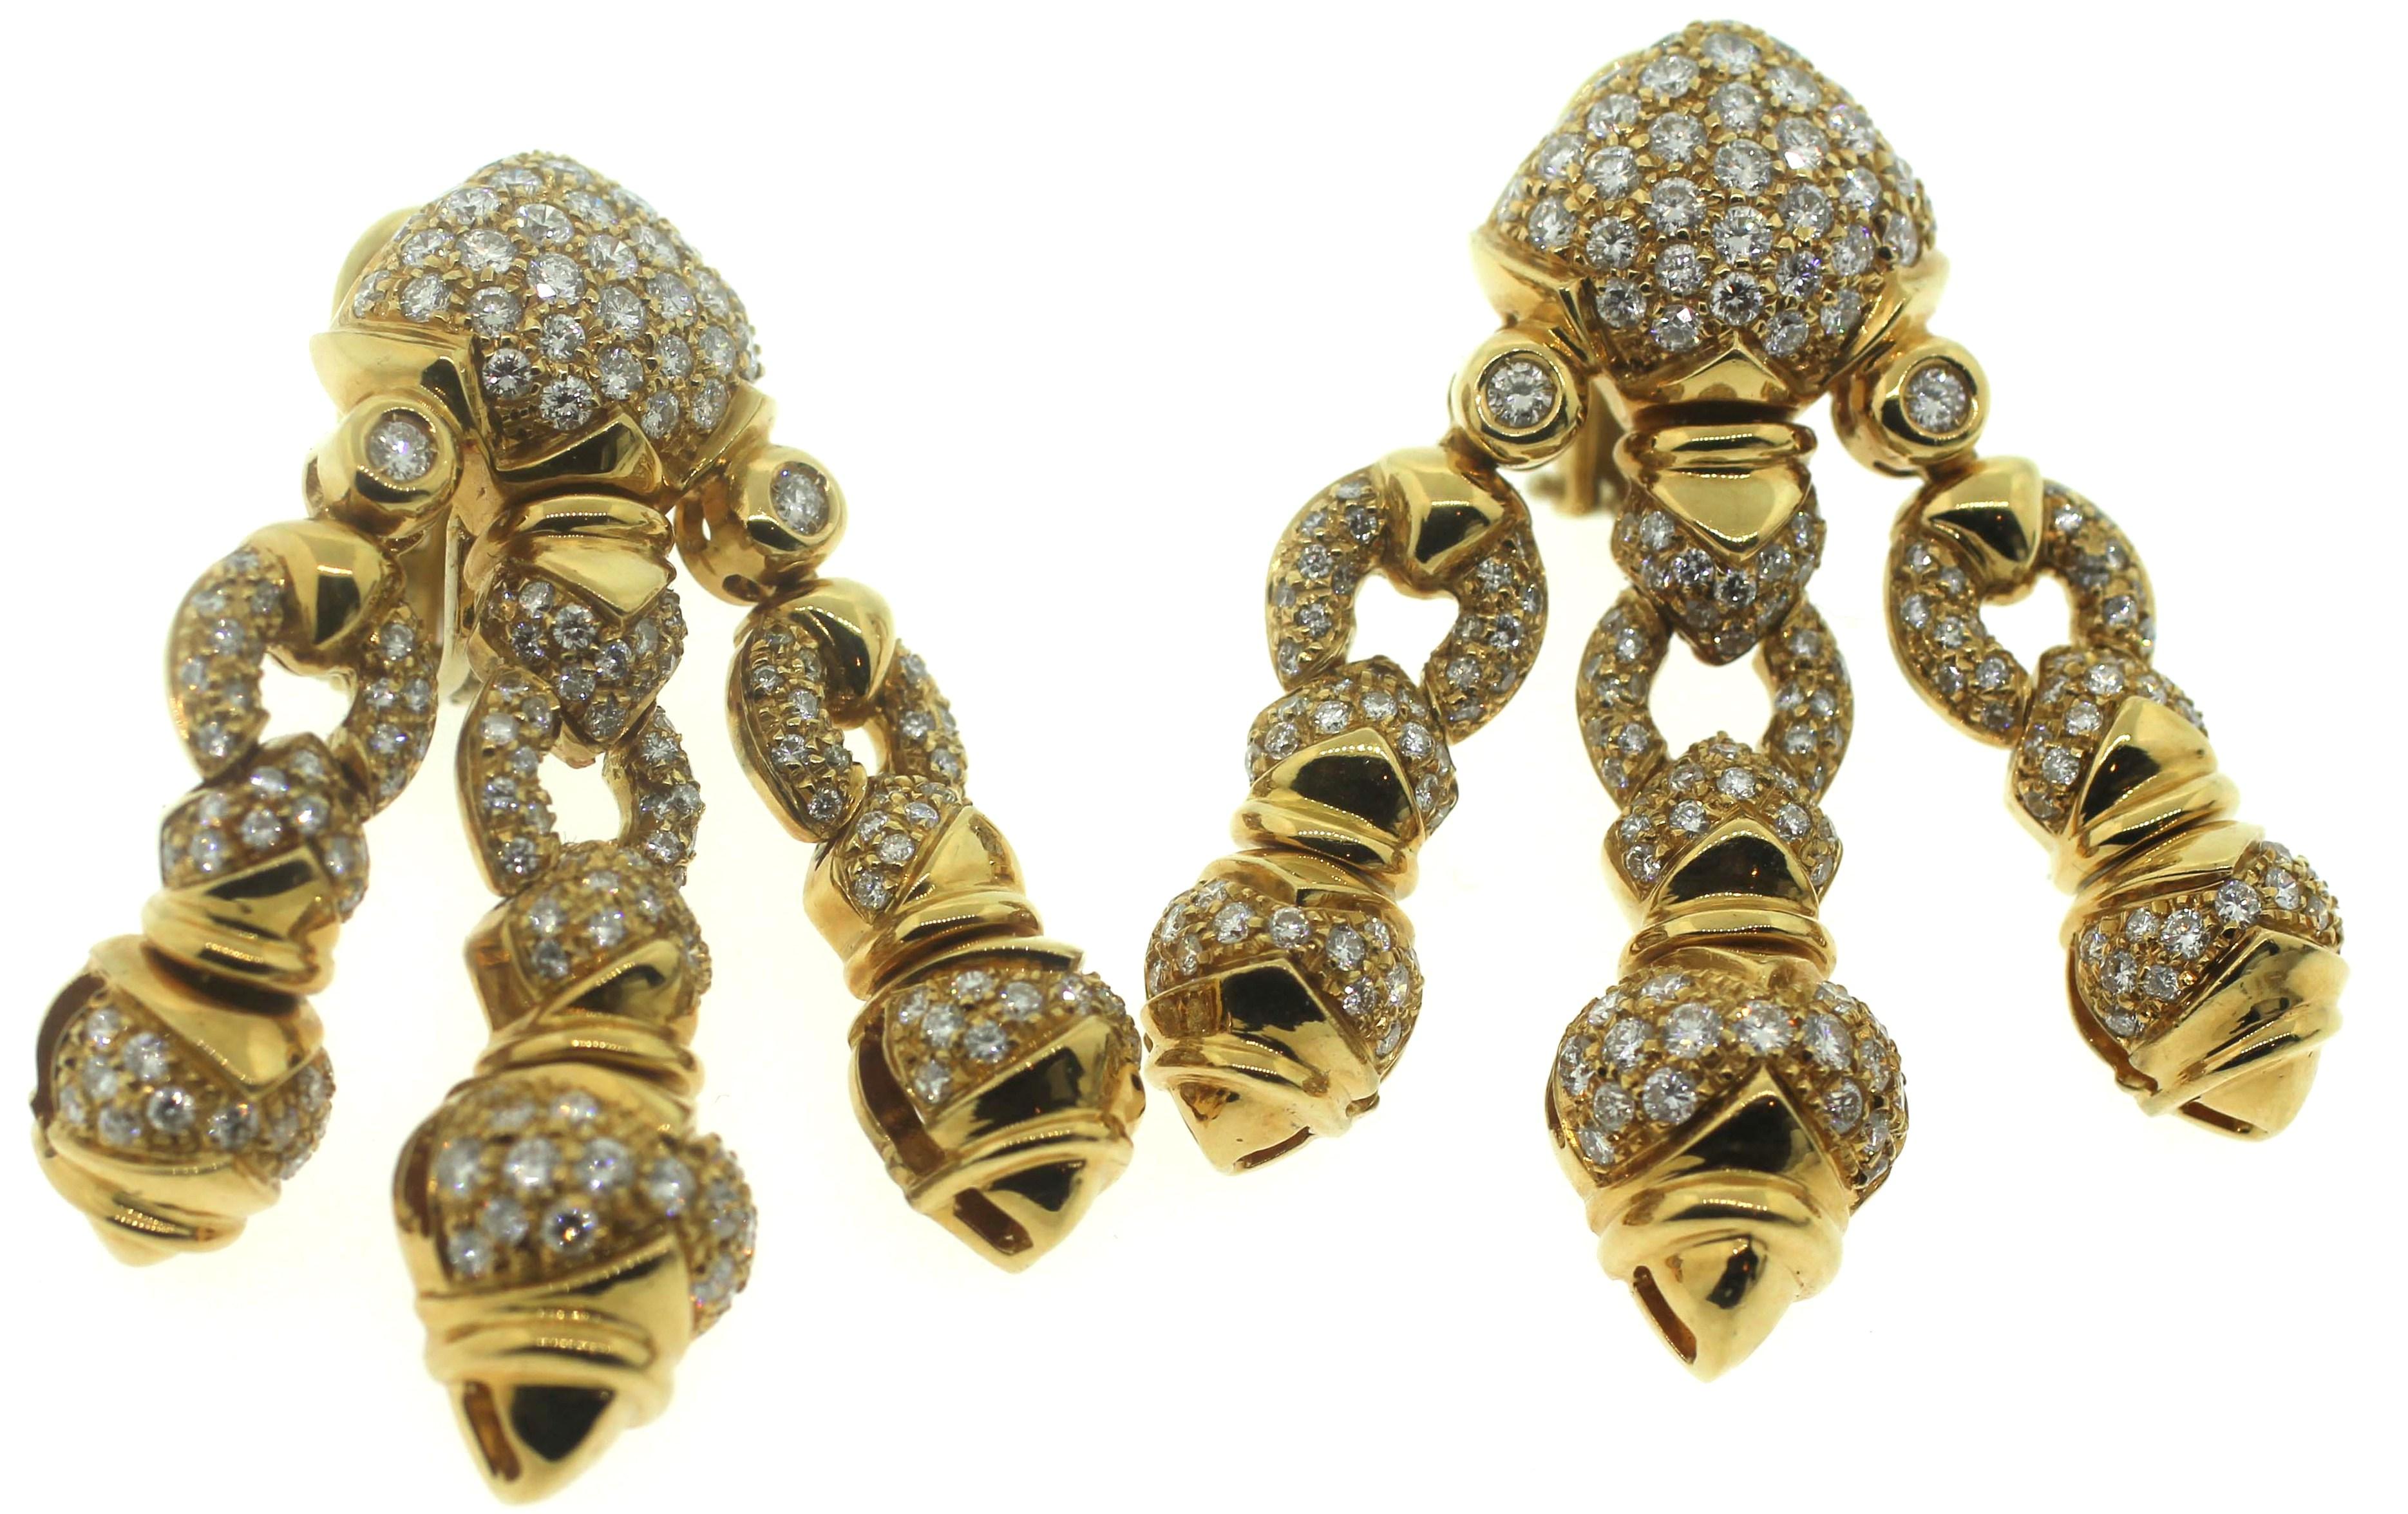 Giovane Italy Estate 18K Diamond Earrings
Reital $20,000